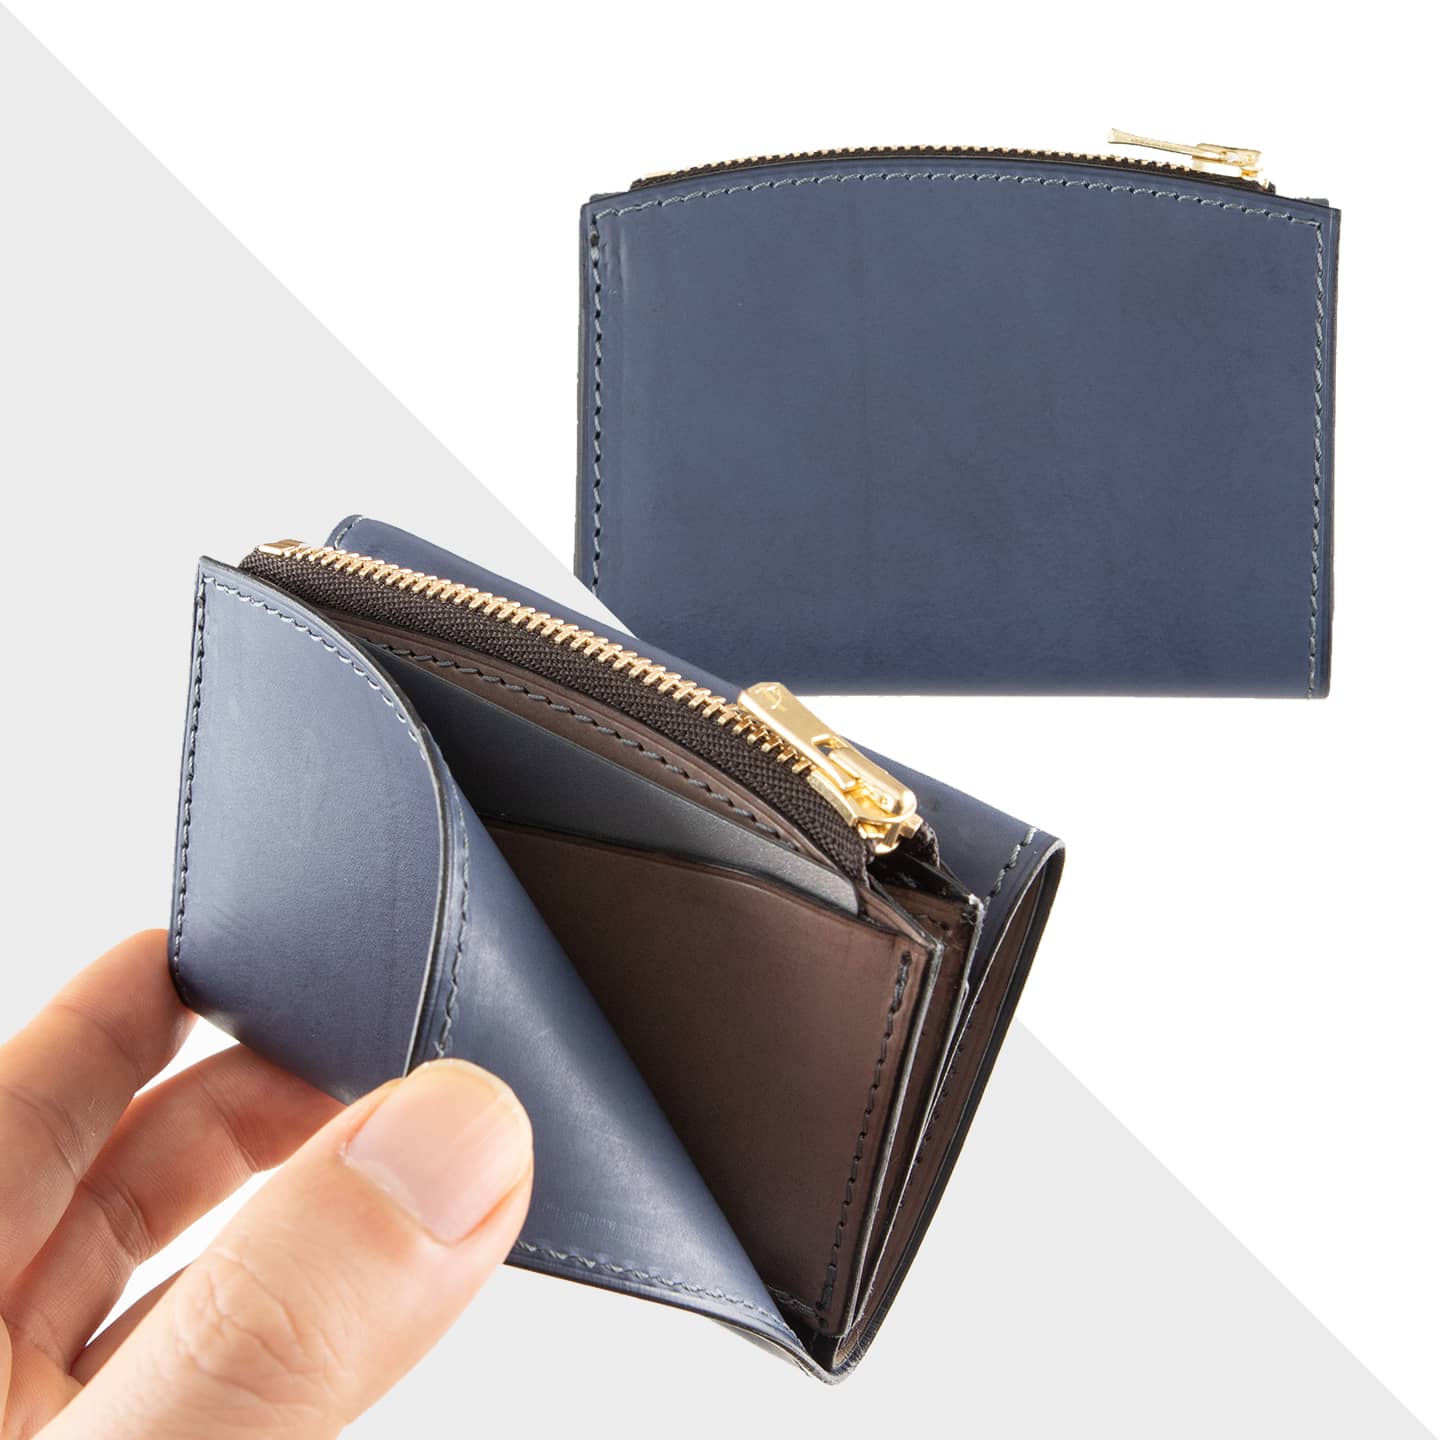 パルマ ミニウォレット 大人のバッグ・財布・ ミニ・コンパクト財布 など拘りの日本製ブランドなら MLS